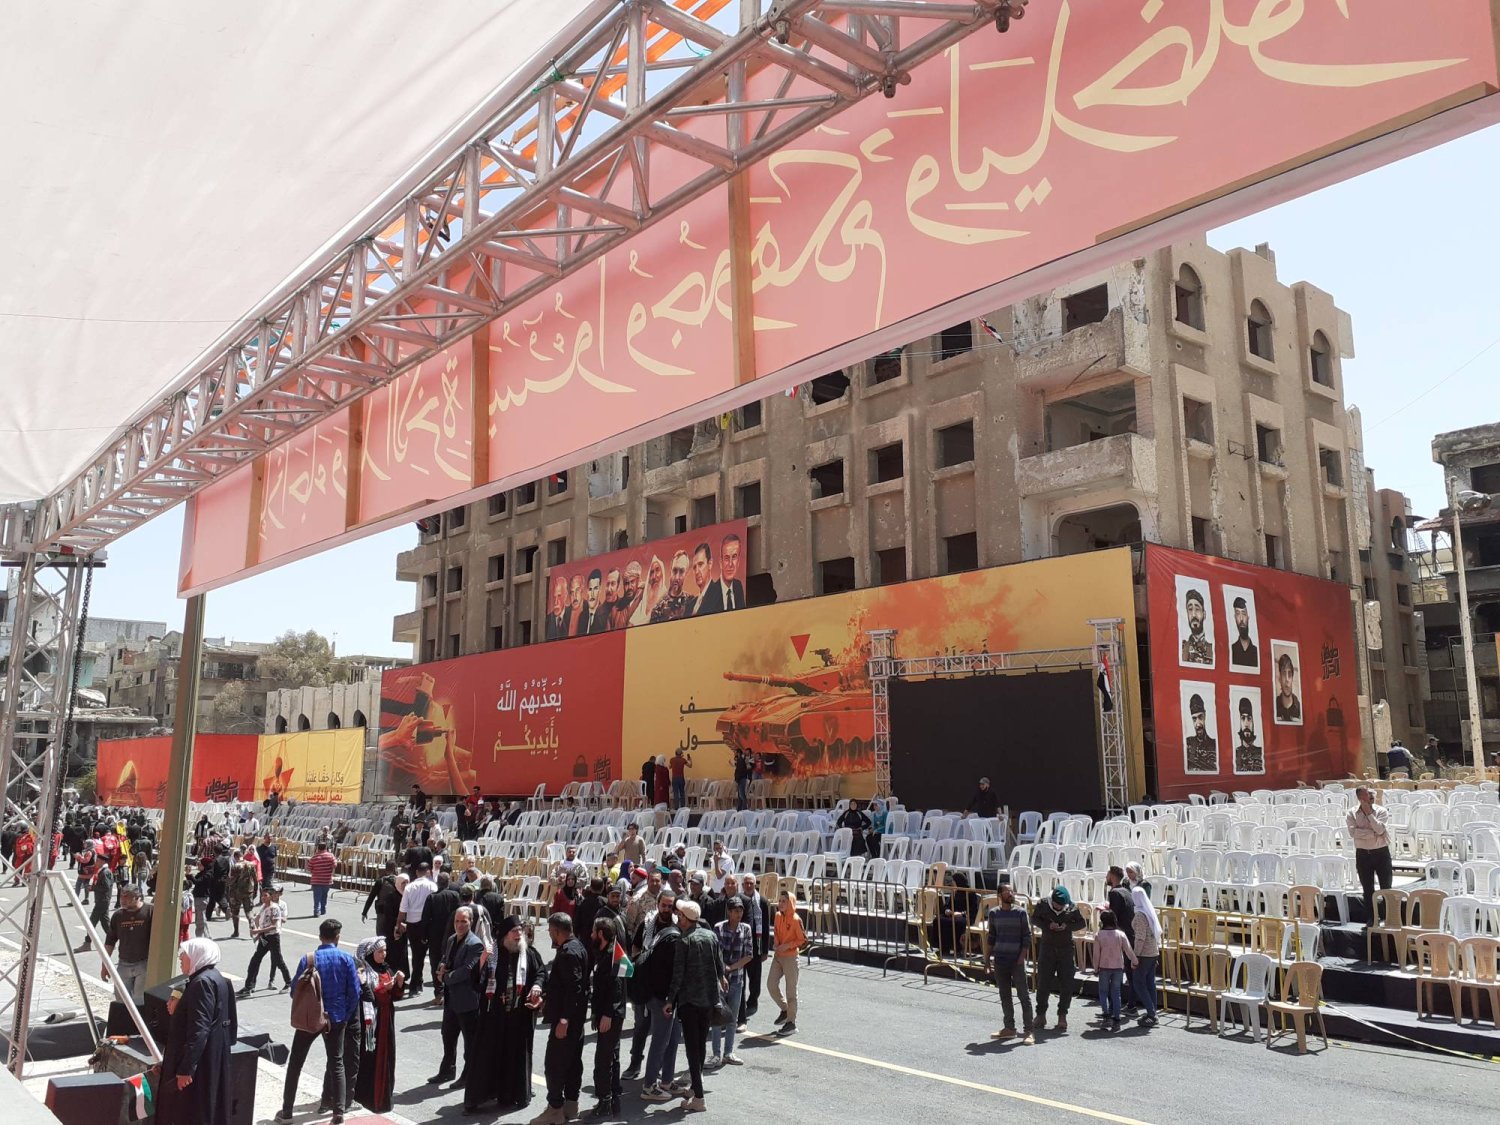 إحياء يوم القدس في مخيم اليرموك وغاب عن الاحتفال التمثيل الإيراني الرسمي وصور قياديات إيرانية أو من «حزب الله» اللبناني (الشرق الأوسط)